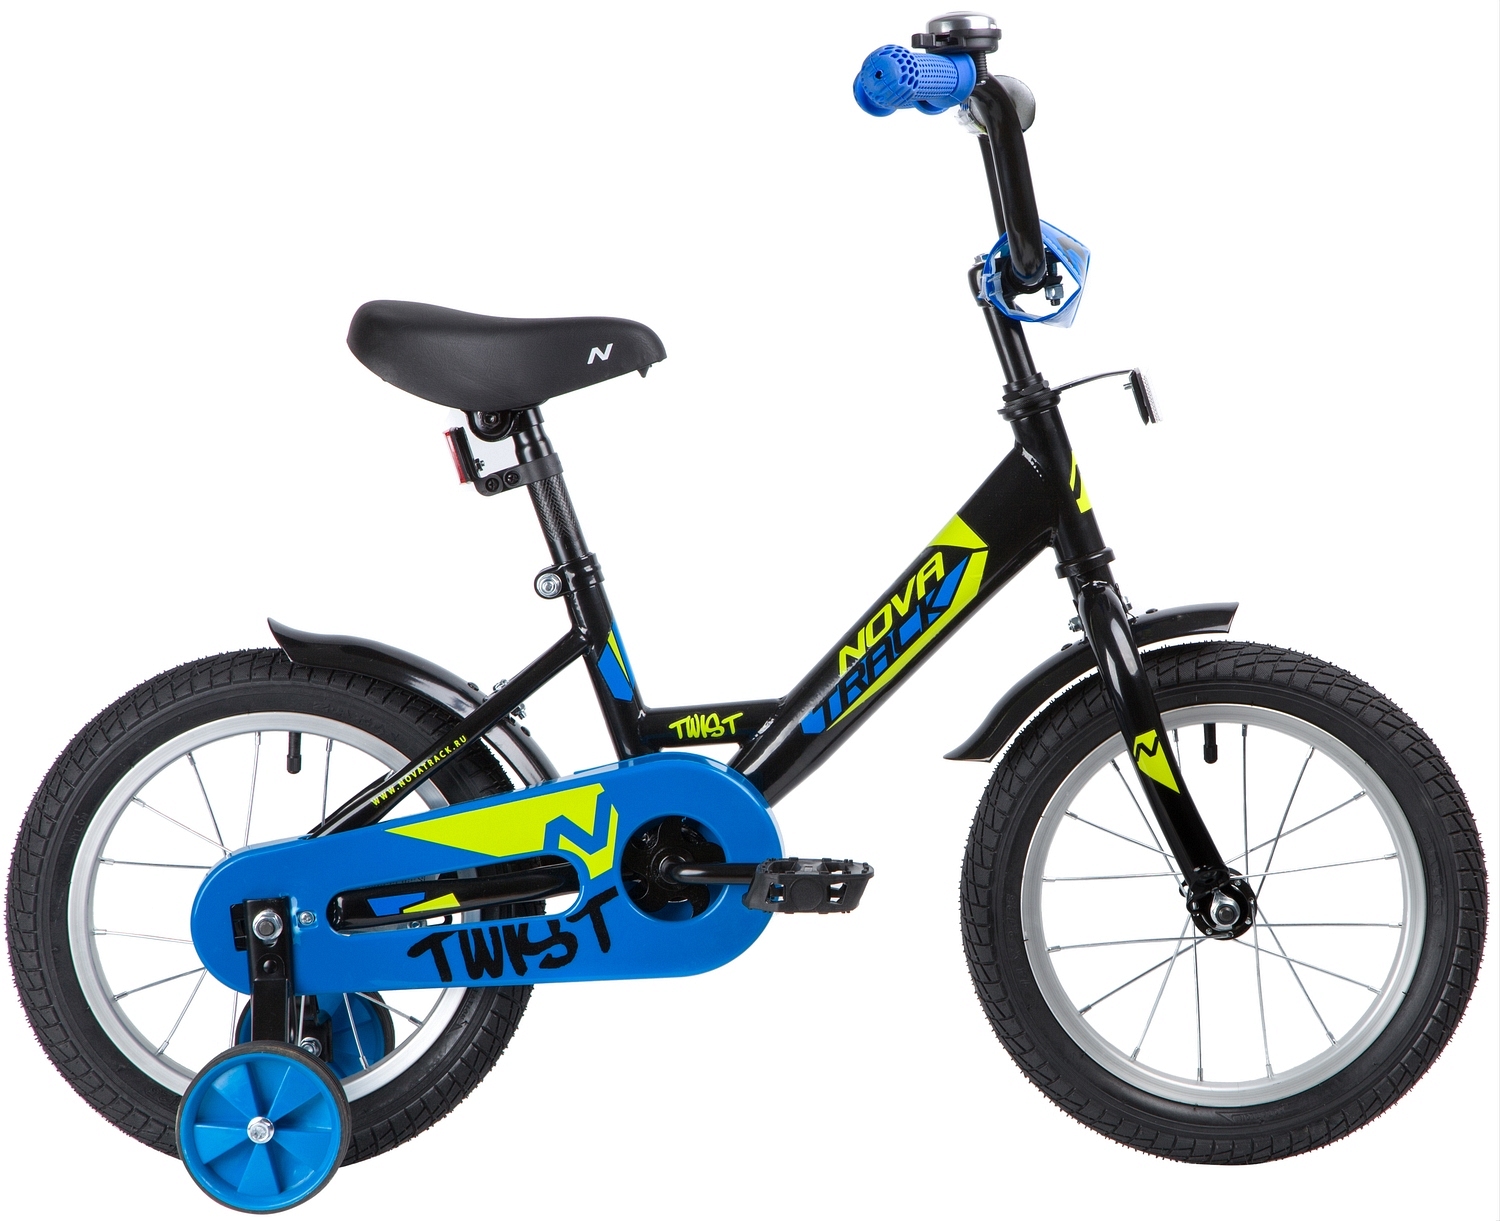  Отзывы о Детском велосипеде Novatrack Twist 14 2020